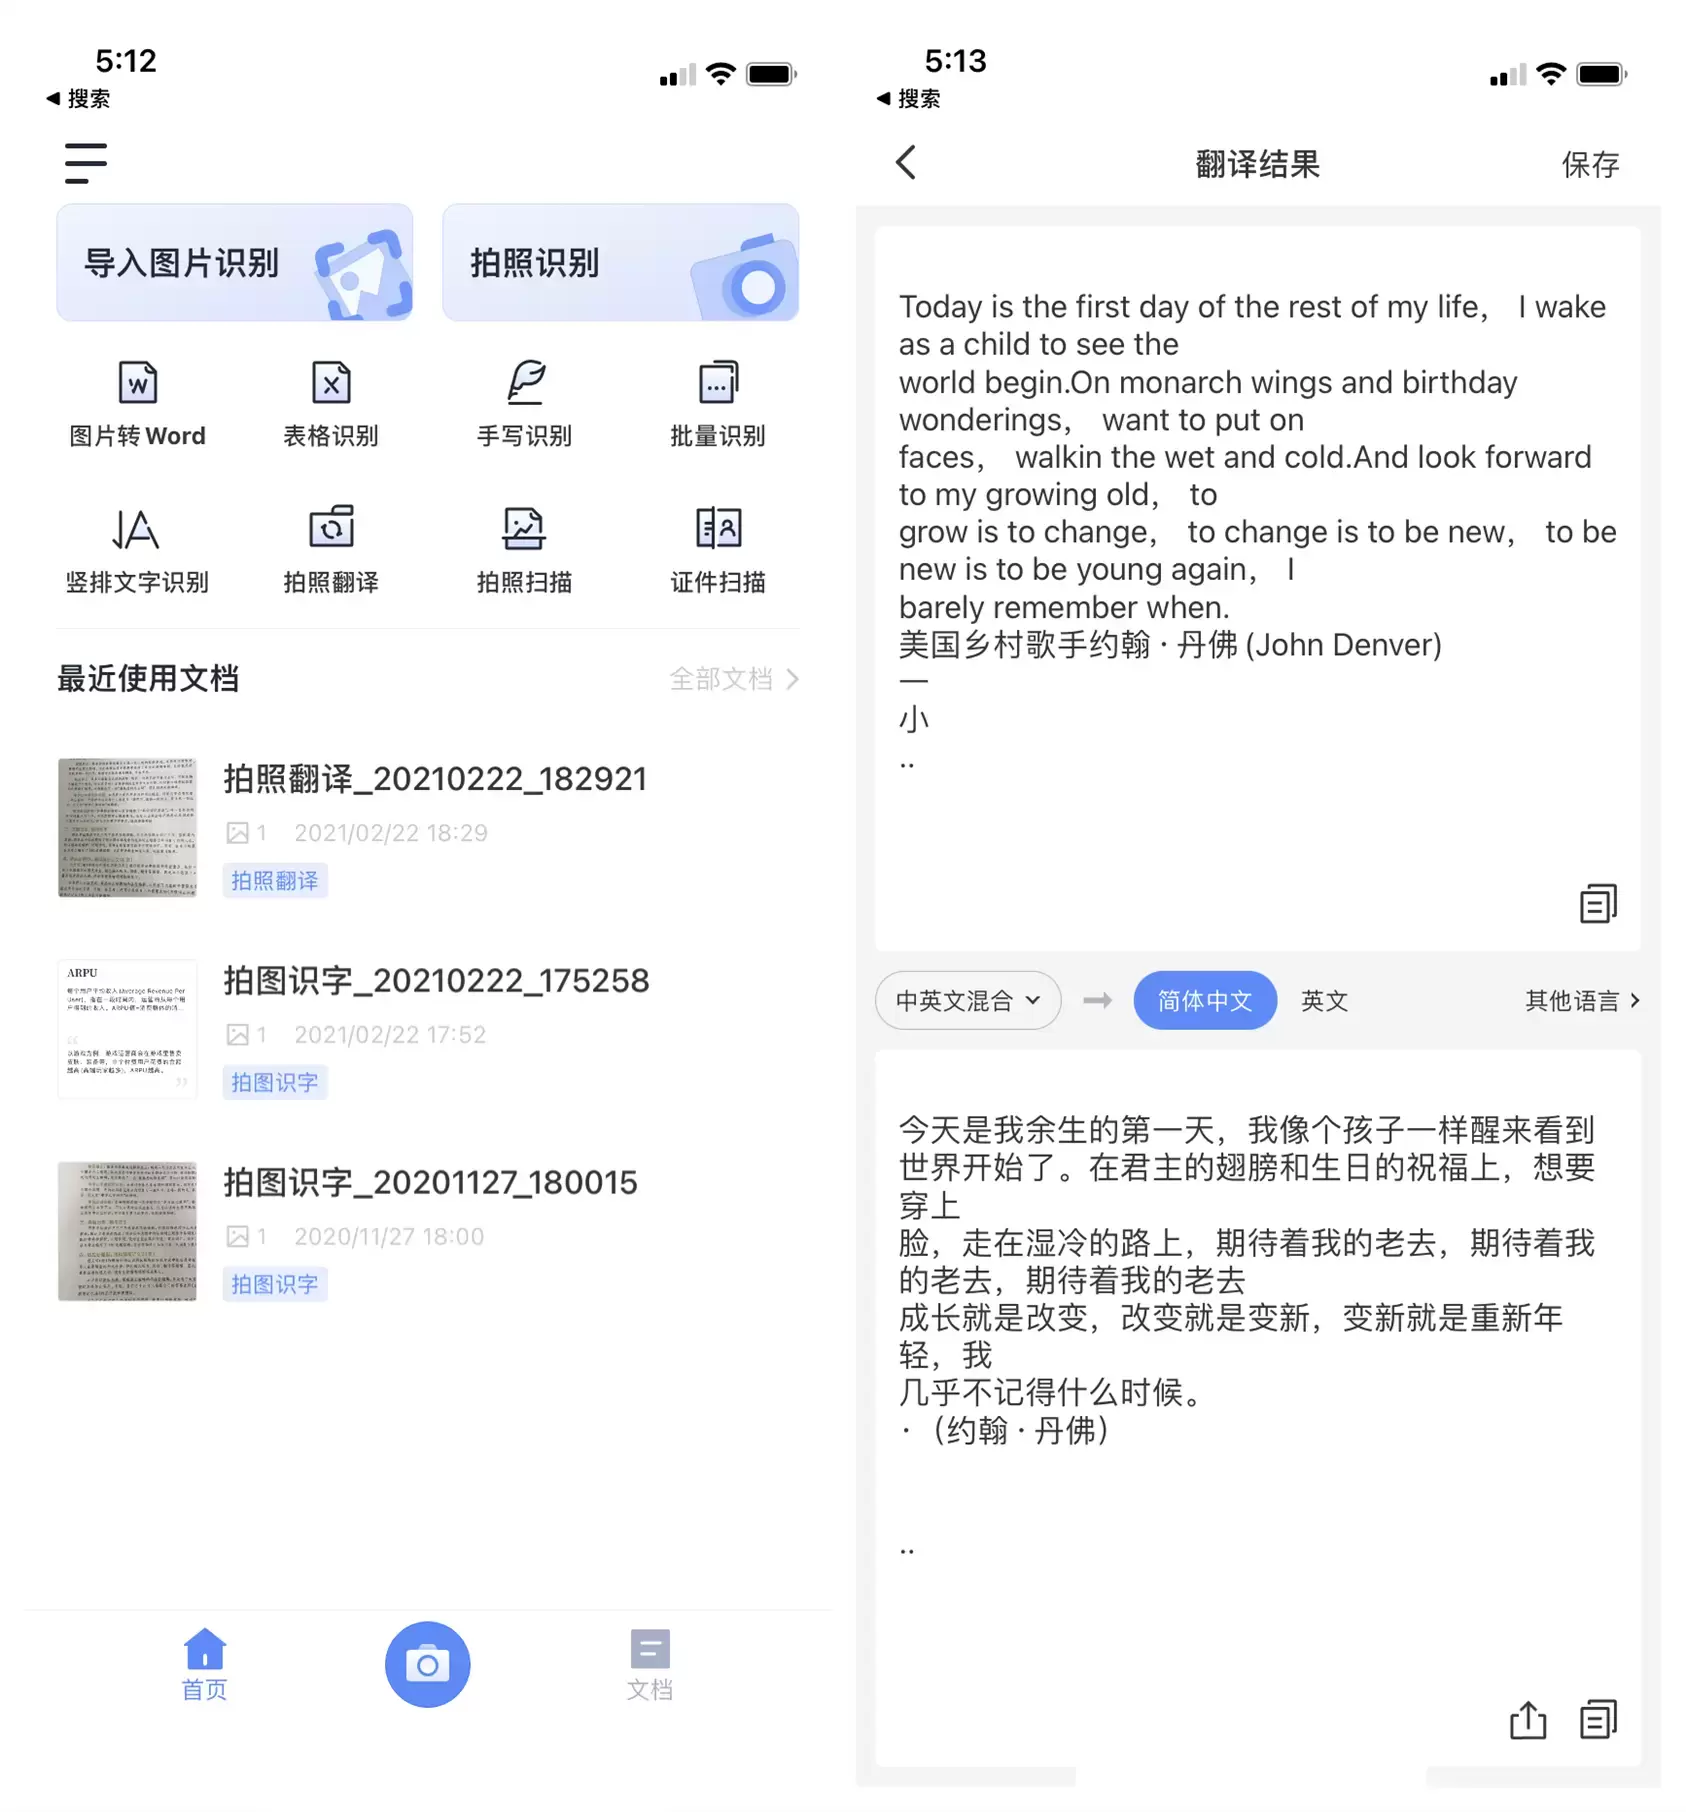 打开手机这个功能，不认识的英文拍一张照，就能翻译成中文